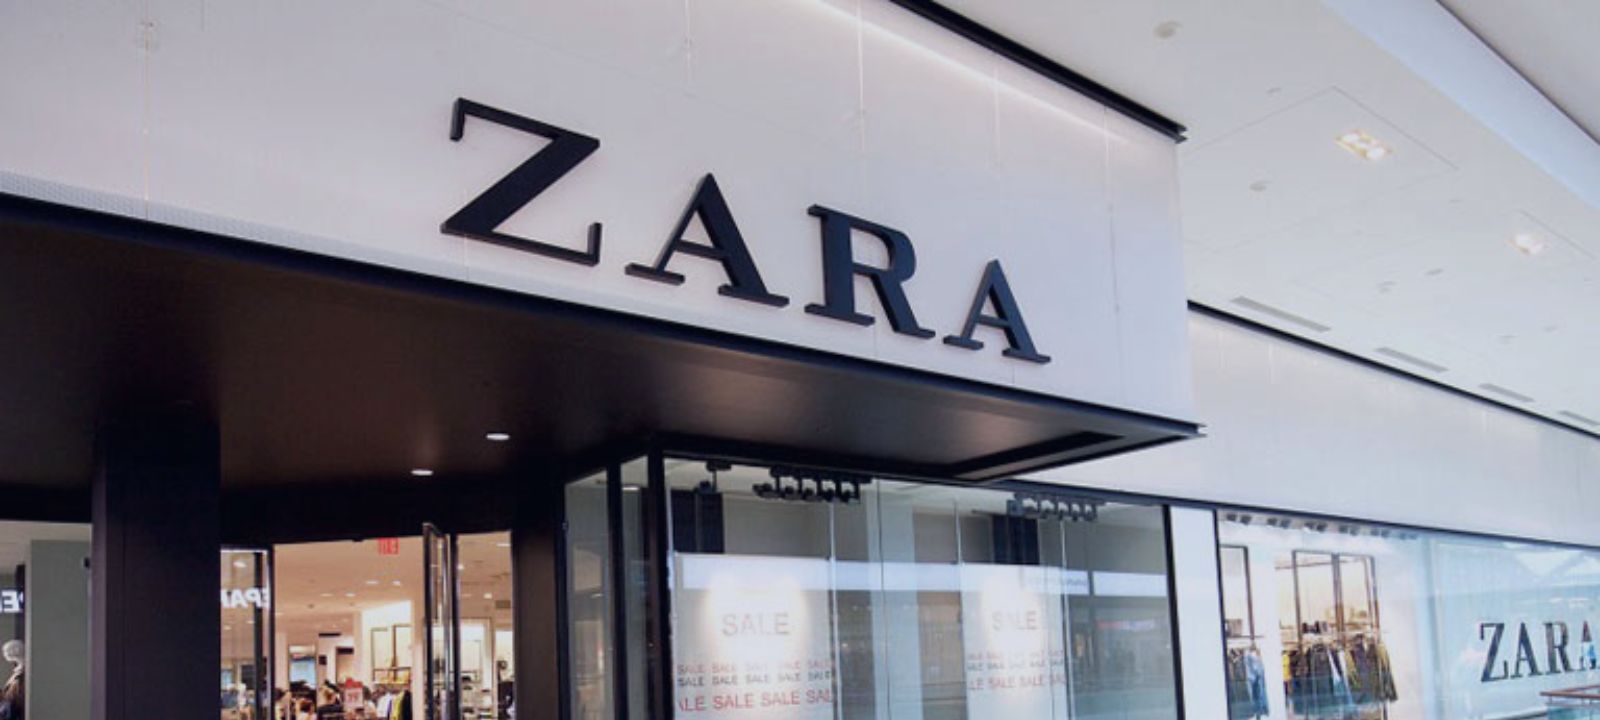 La primera tienda de Zara en Madrid echa el cierre